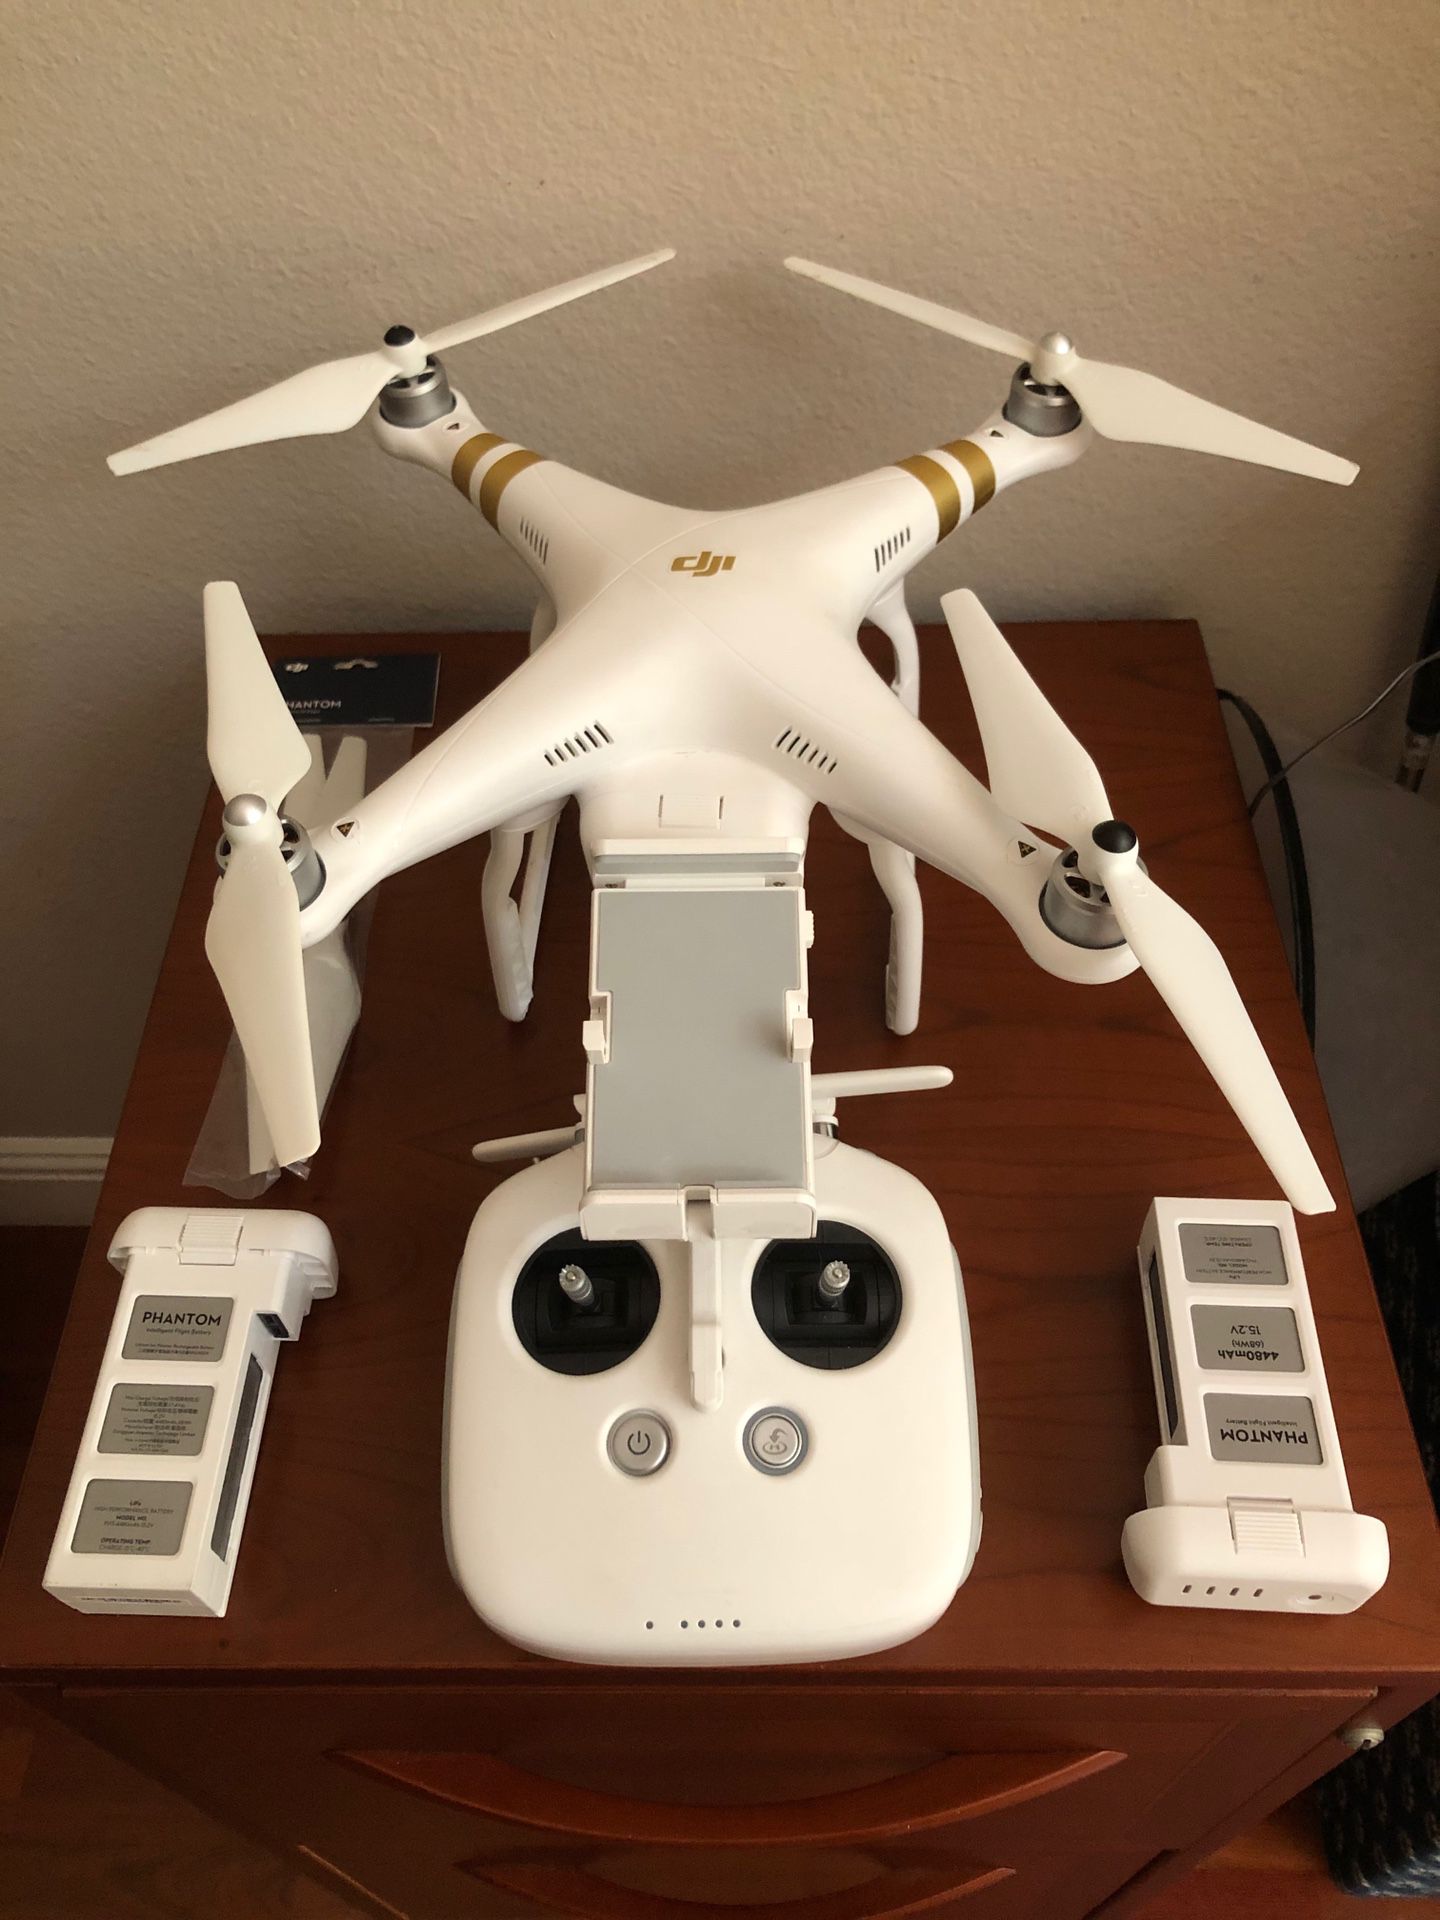 DJI Phantom 3 Professional Drone Quadcopter 4K Camera Extras!!